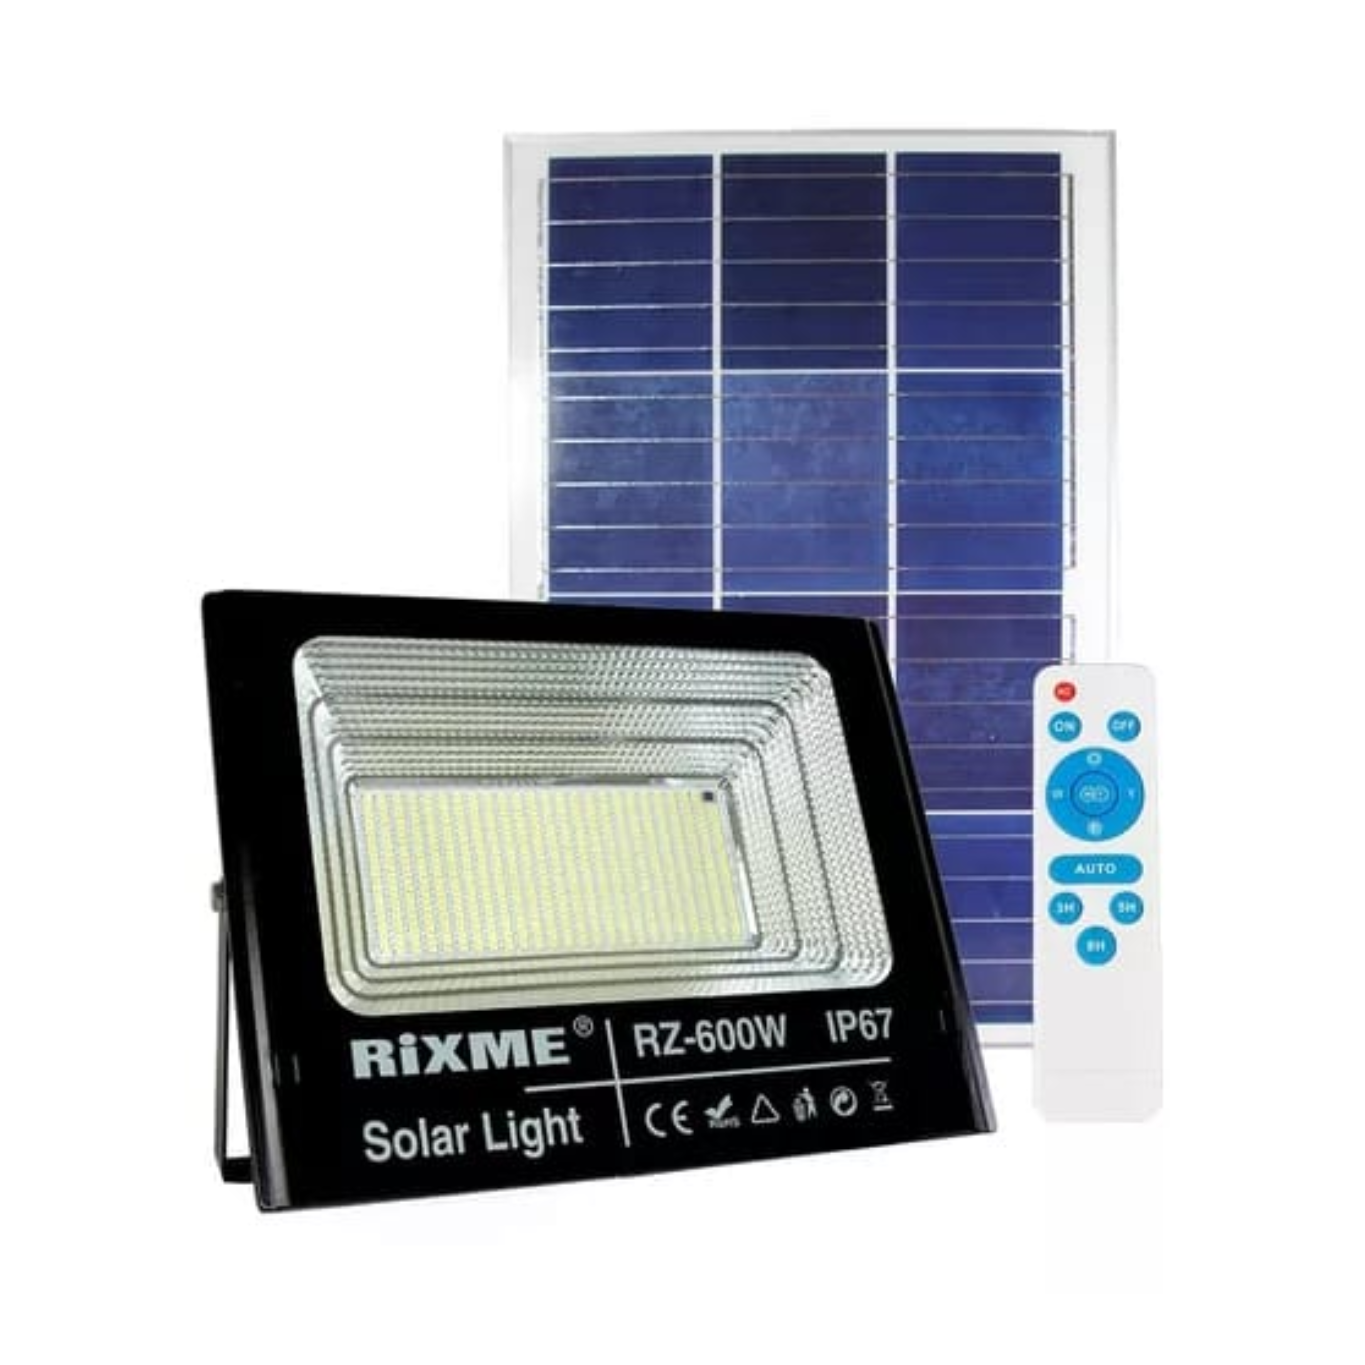 Reflector solar Rixme de 600 W